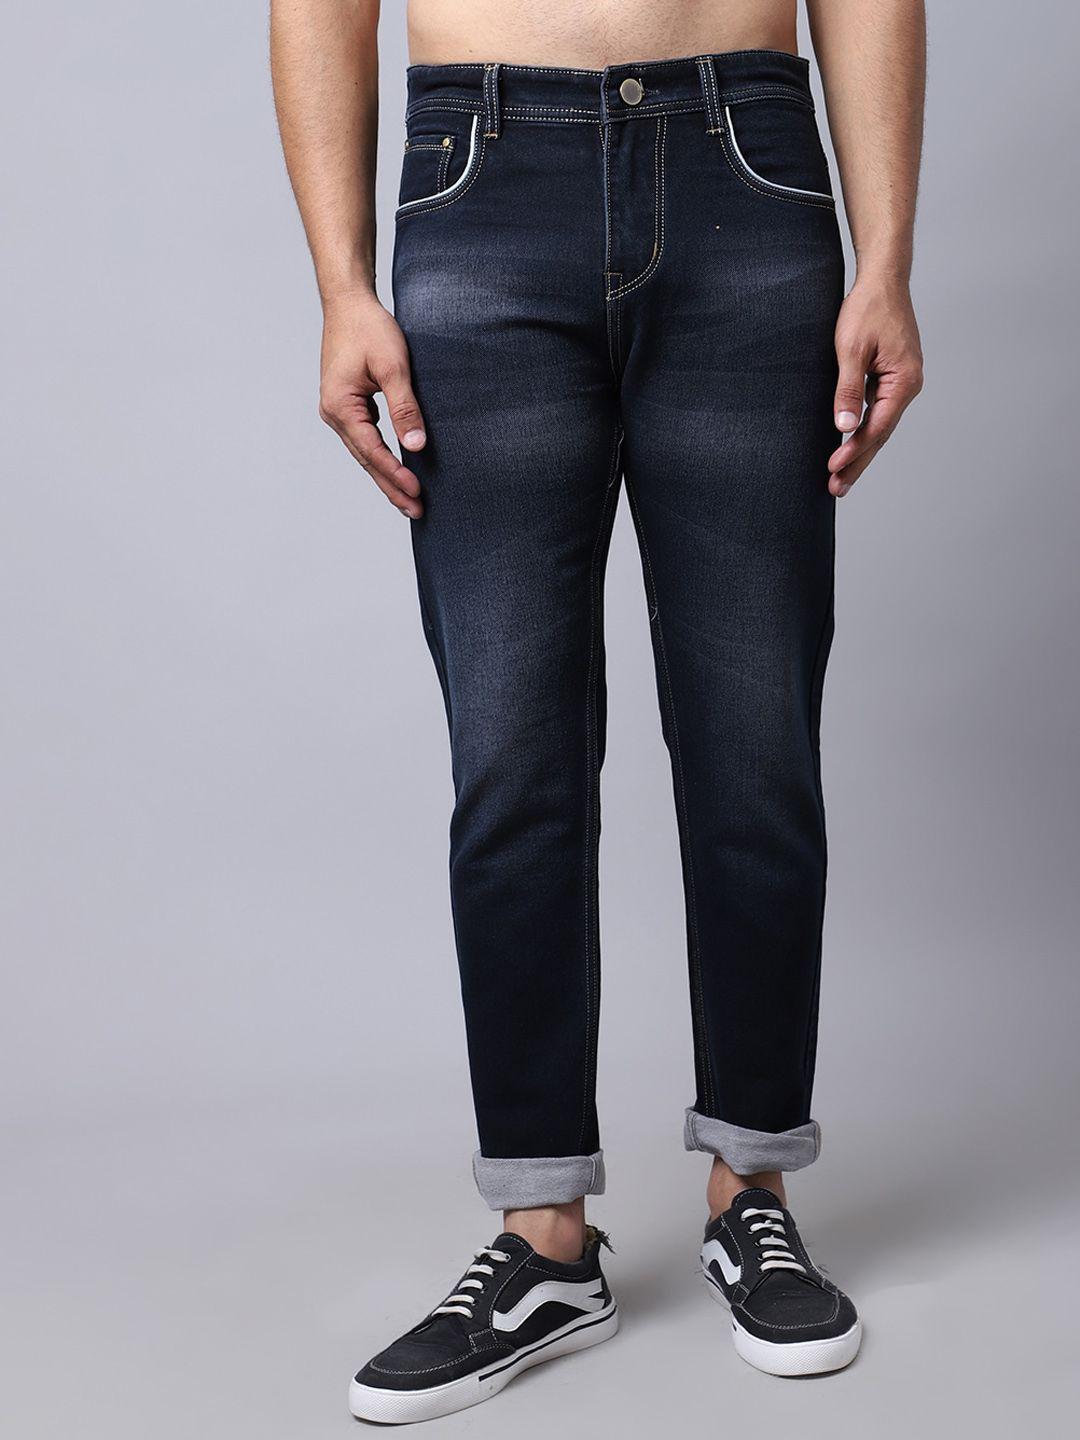 provogue-men-mid-rise-clean-look-light-fade-cotton-jeans